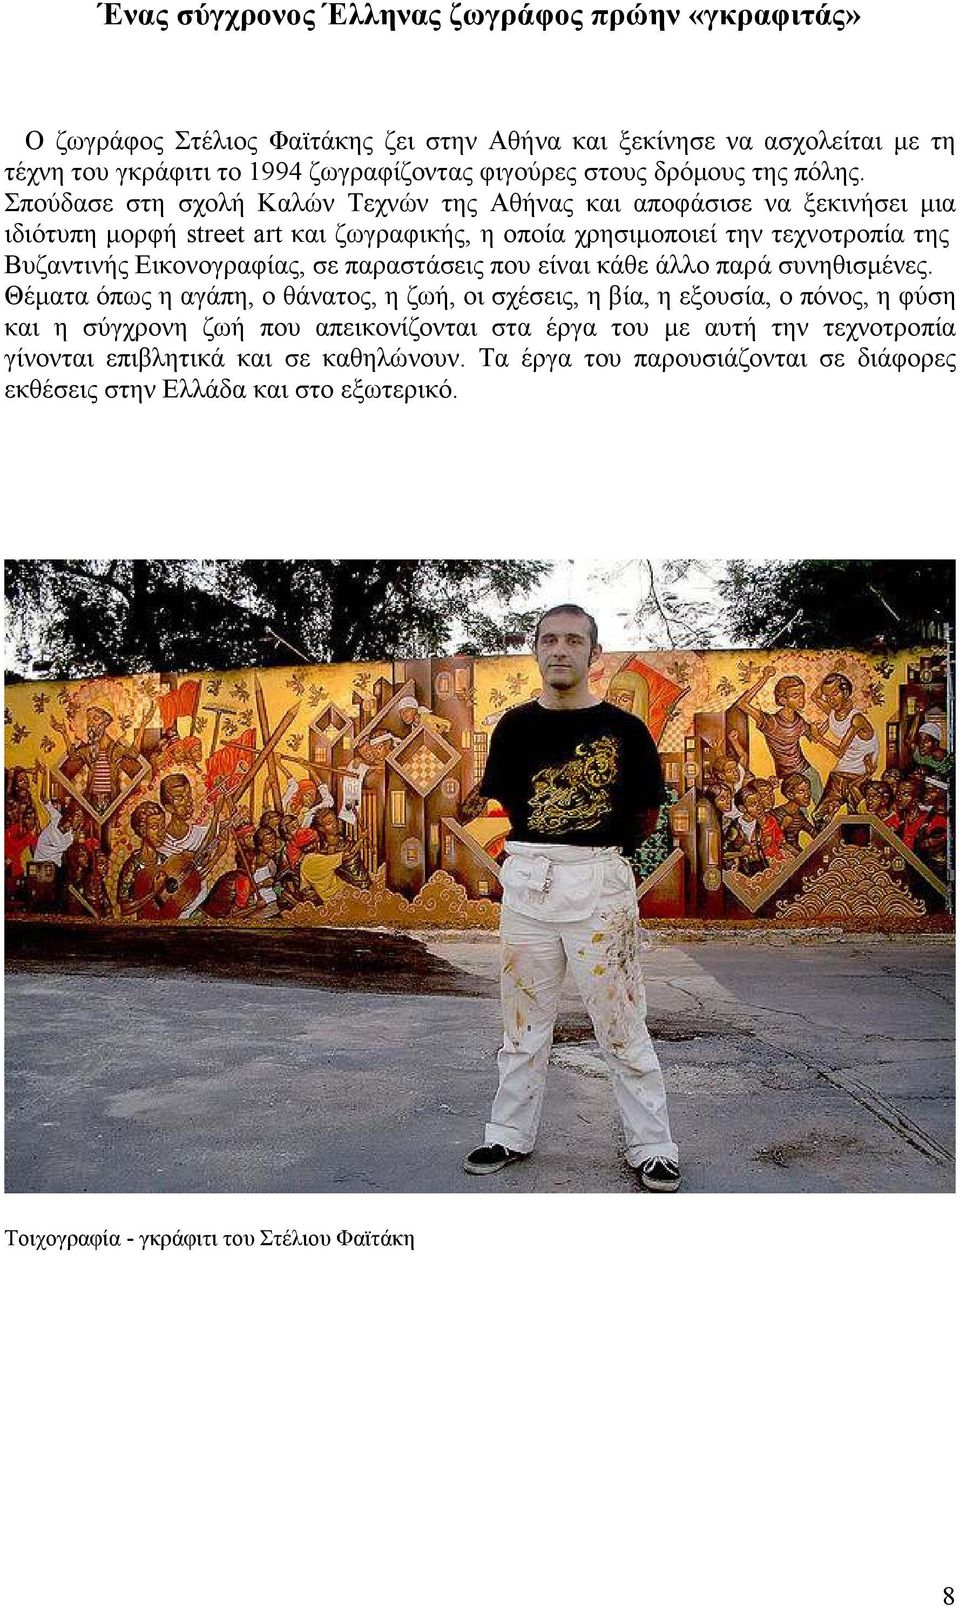 Σπούδασε στη σχολή Καλών Τεχνών της Αθήνας και αποφάσισε να ξεκινήσει µια ιδιότυπη µορφή street art και ζωγραφικής, η οποία χρησιµοποιεί την τεχνοτροπία της Βυζαντινής Εικονογραφίας, σε